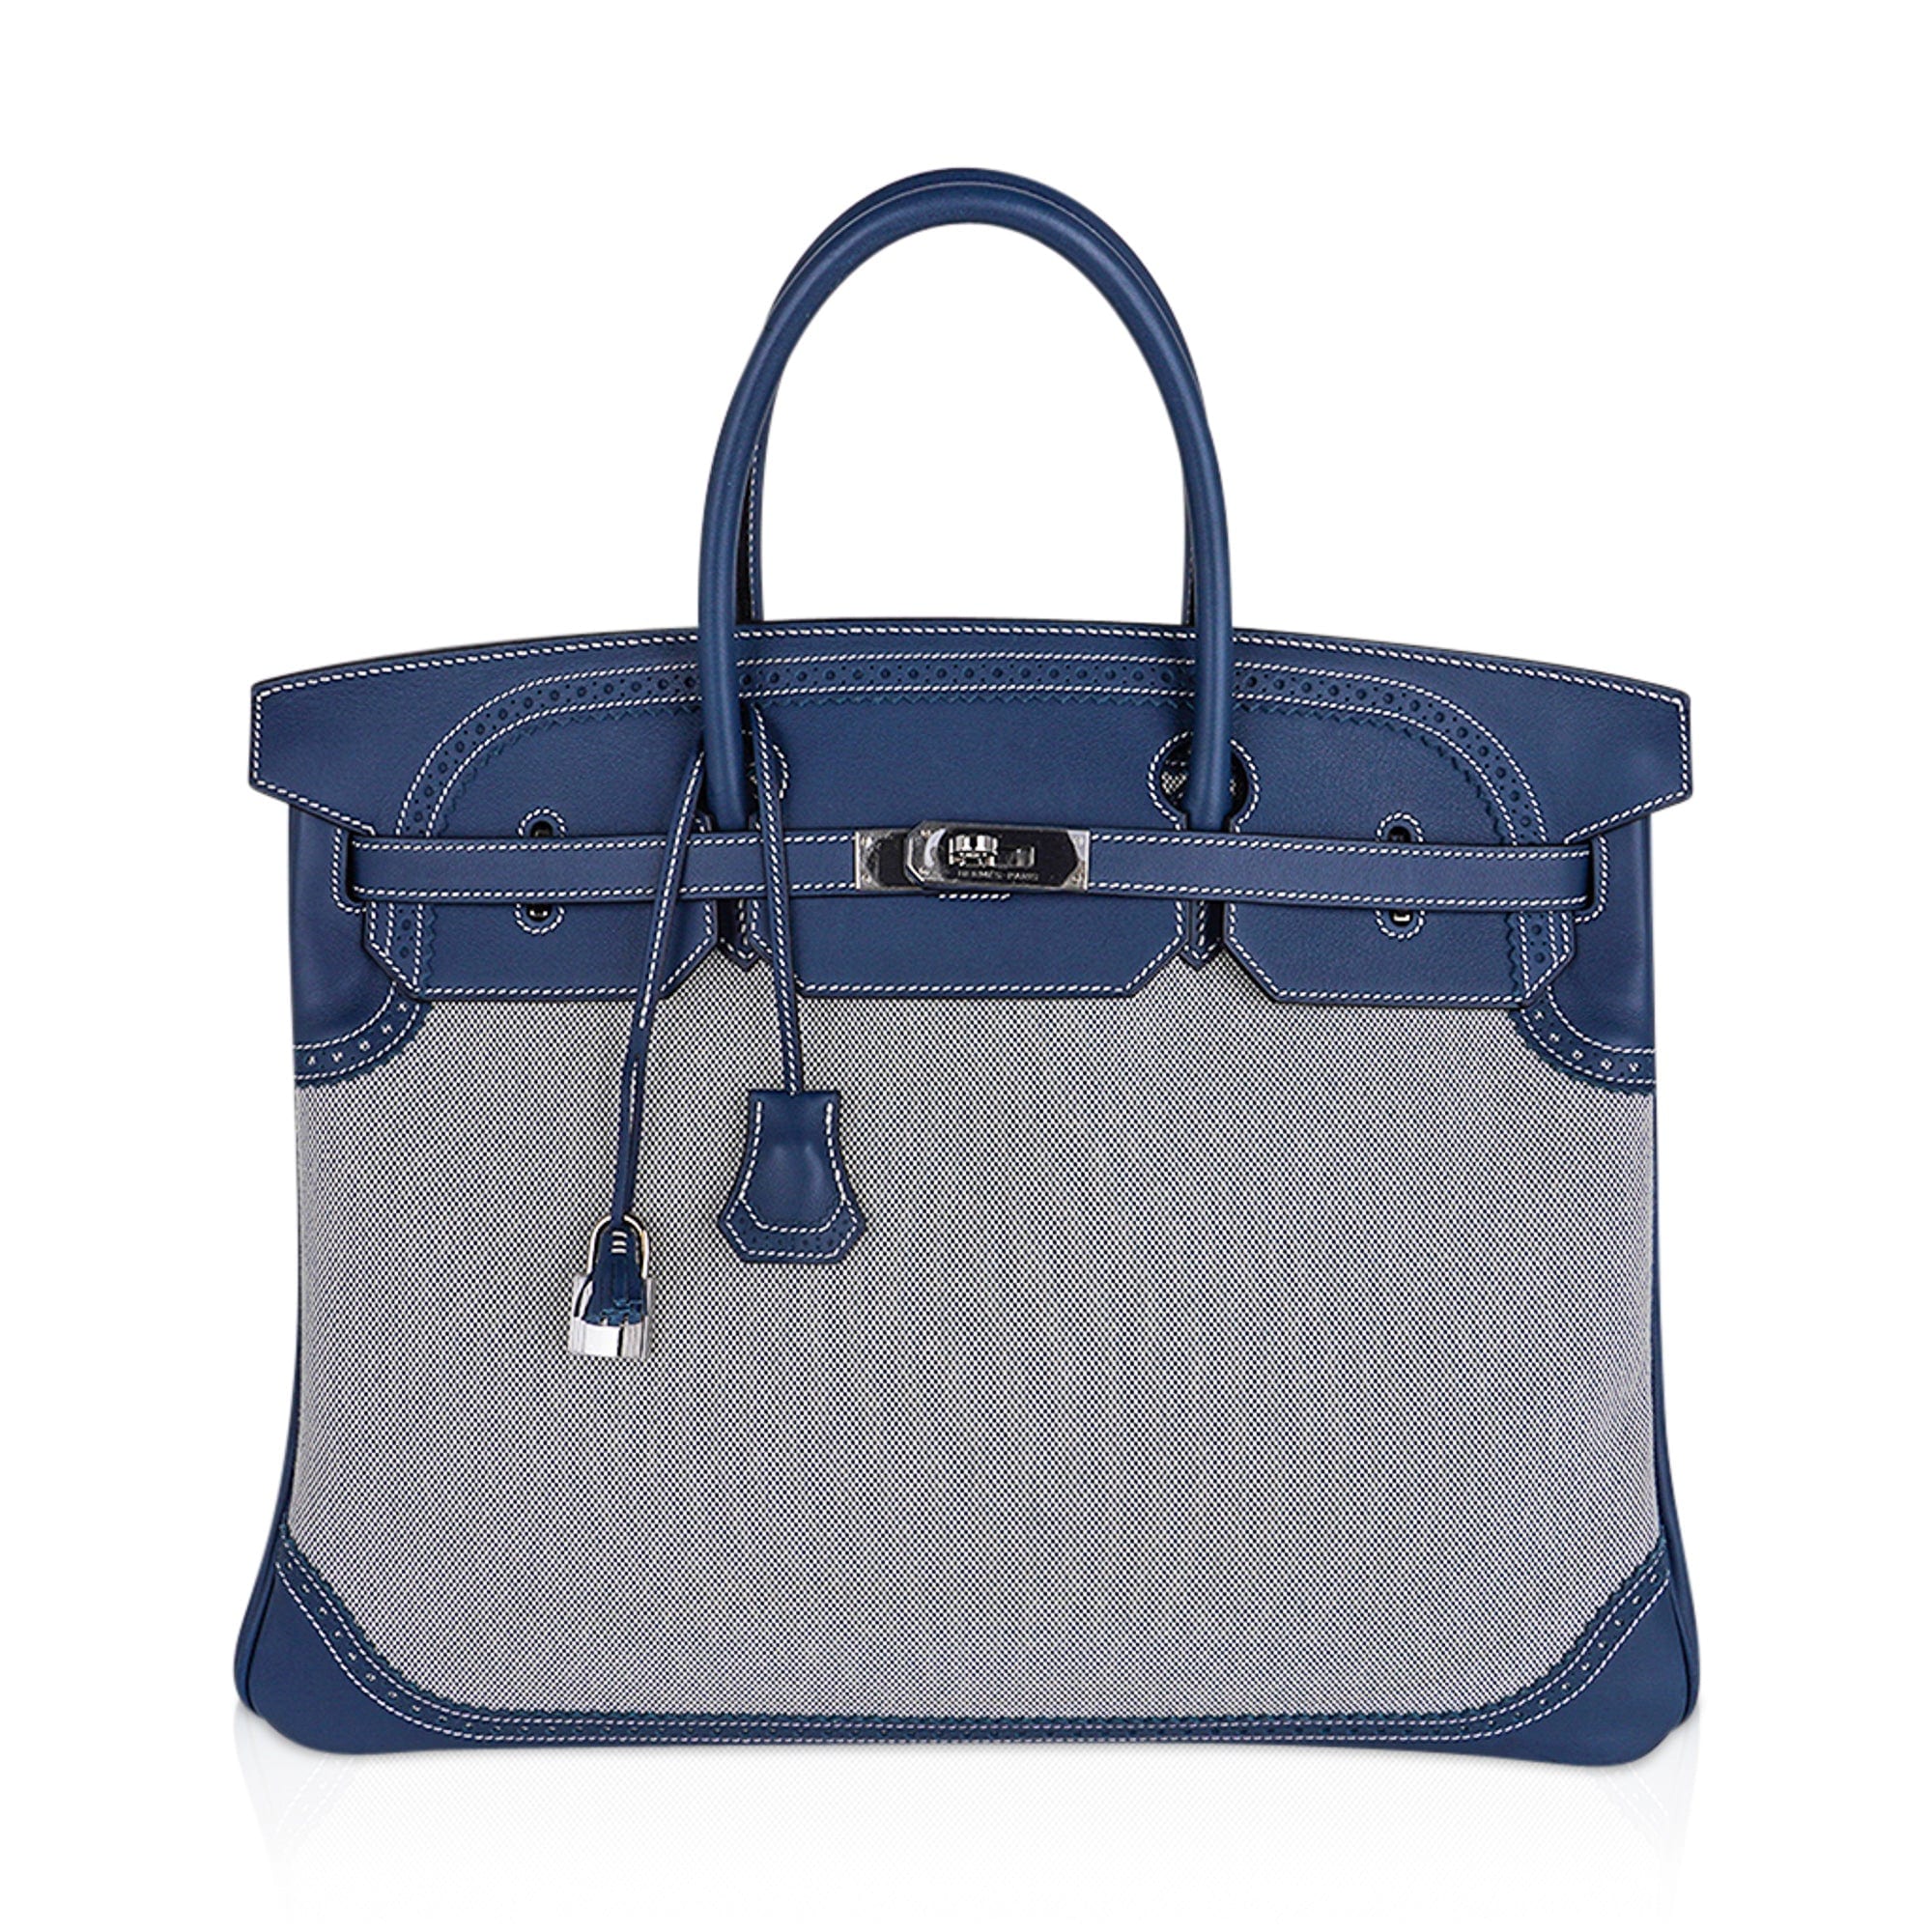 Hermès Birkin 40 Ghillies Barenia Bag